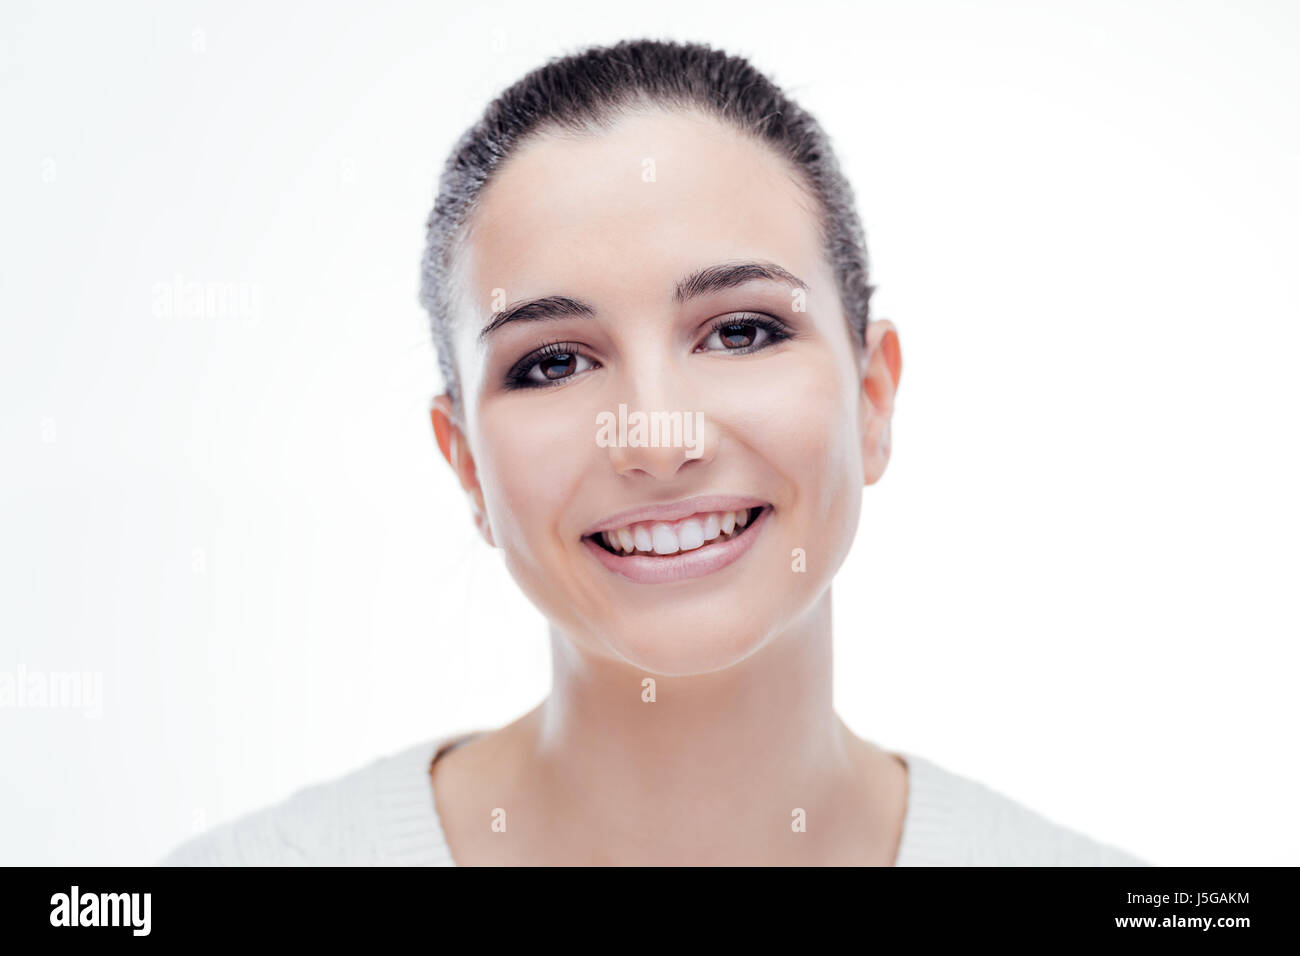 Lächelnd attraktive Frau mit strahlenden frische Gesichtshaut posiert auf weißem Hintergrund Stockfoto